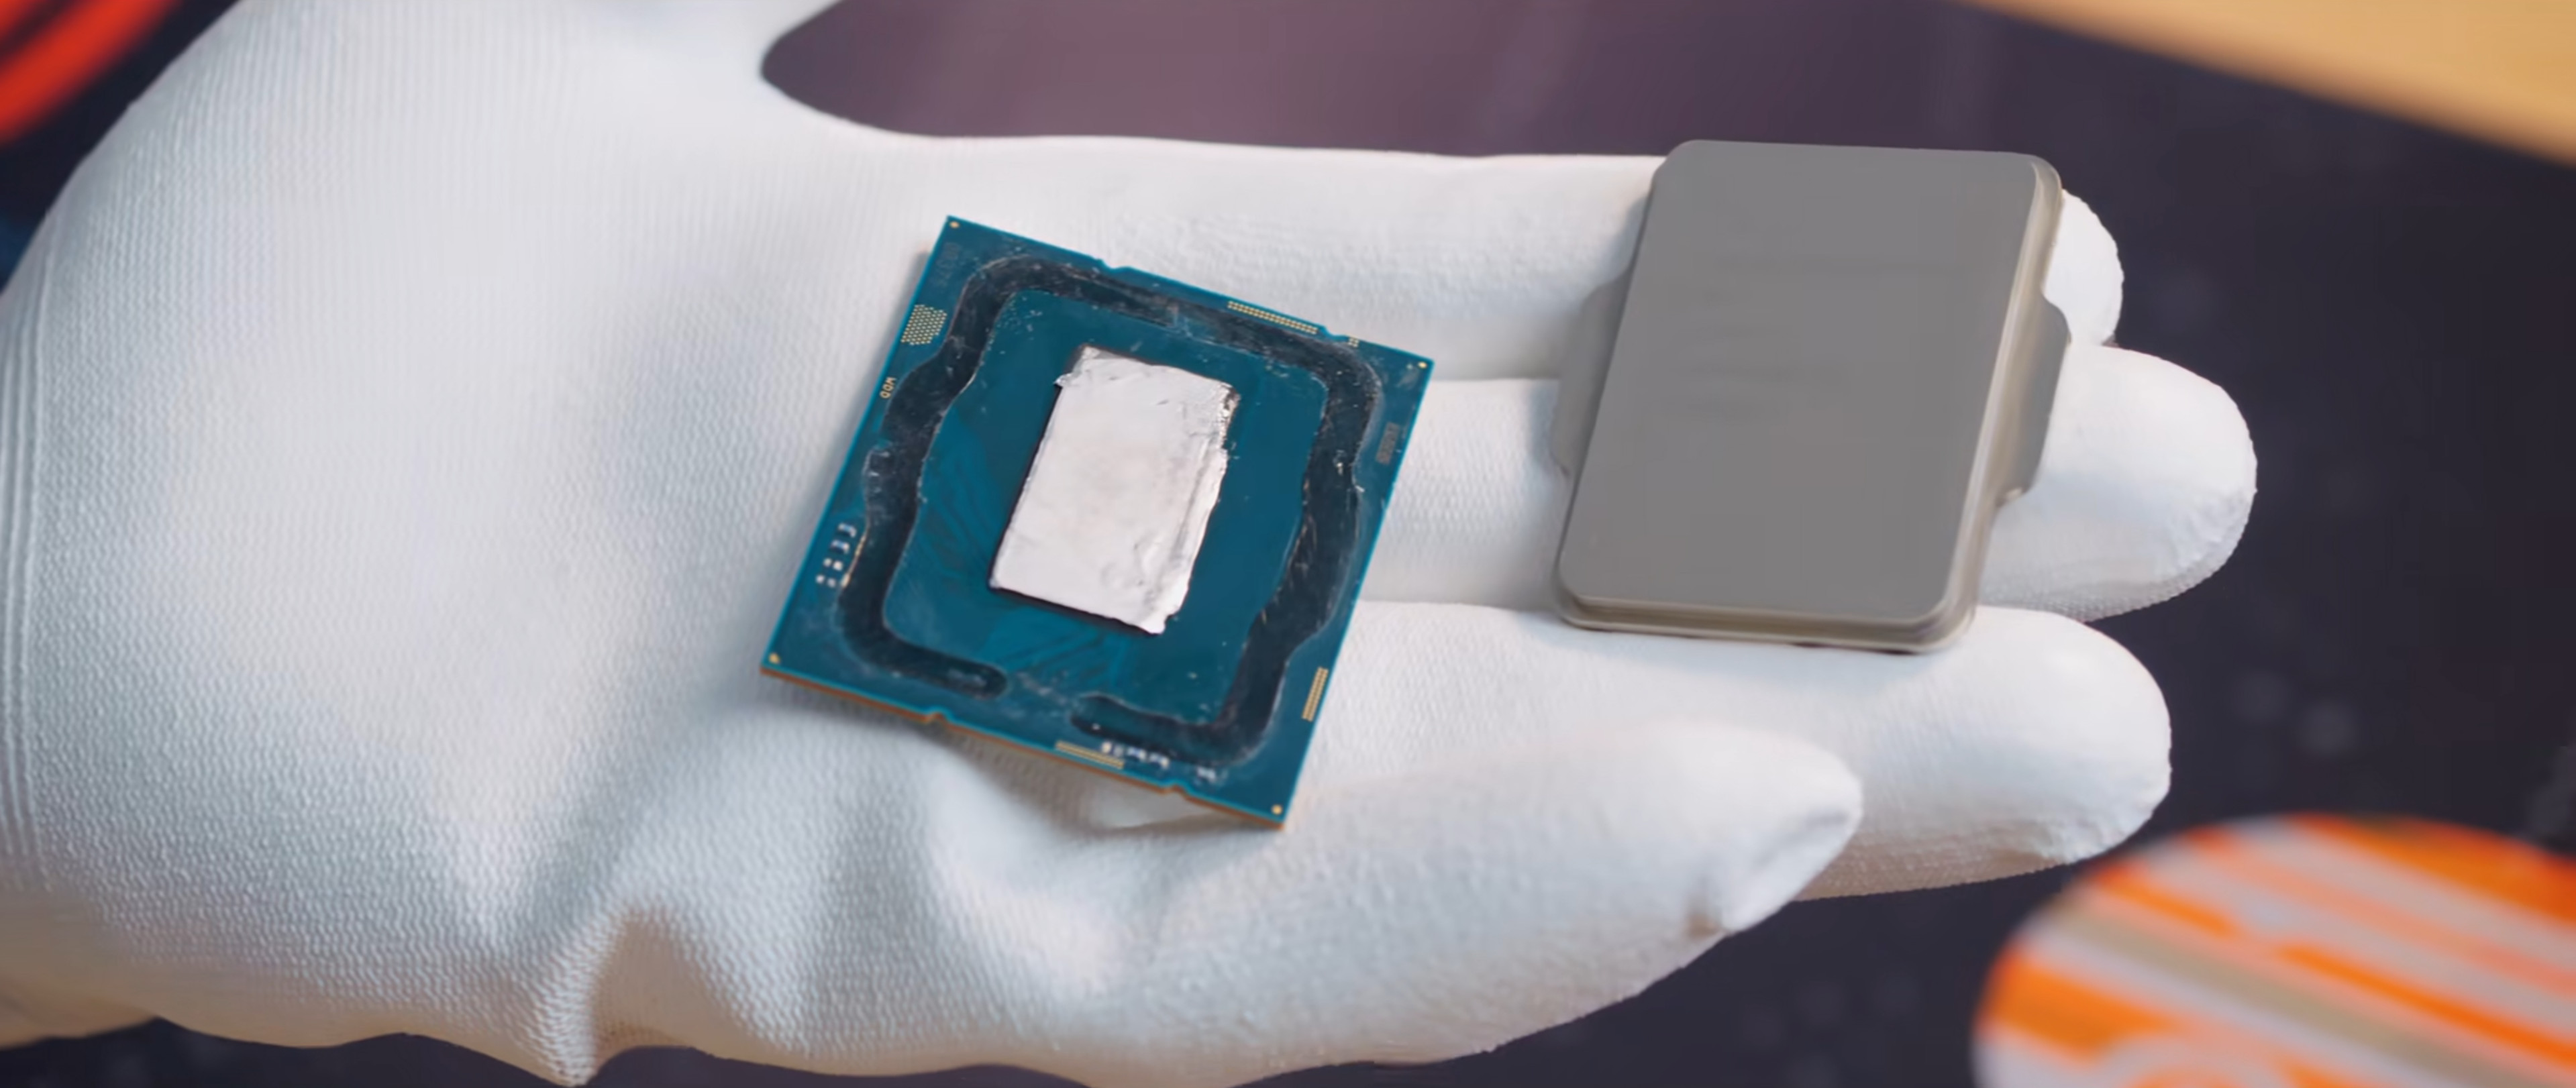 CPU Intel 13th Gen Raptor Lake có IHS đã được “delid” 